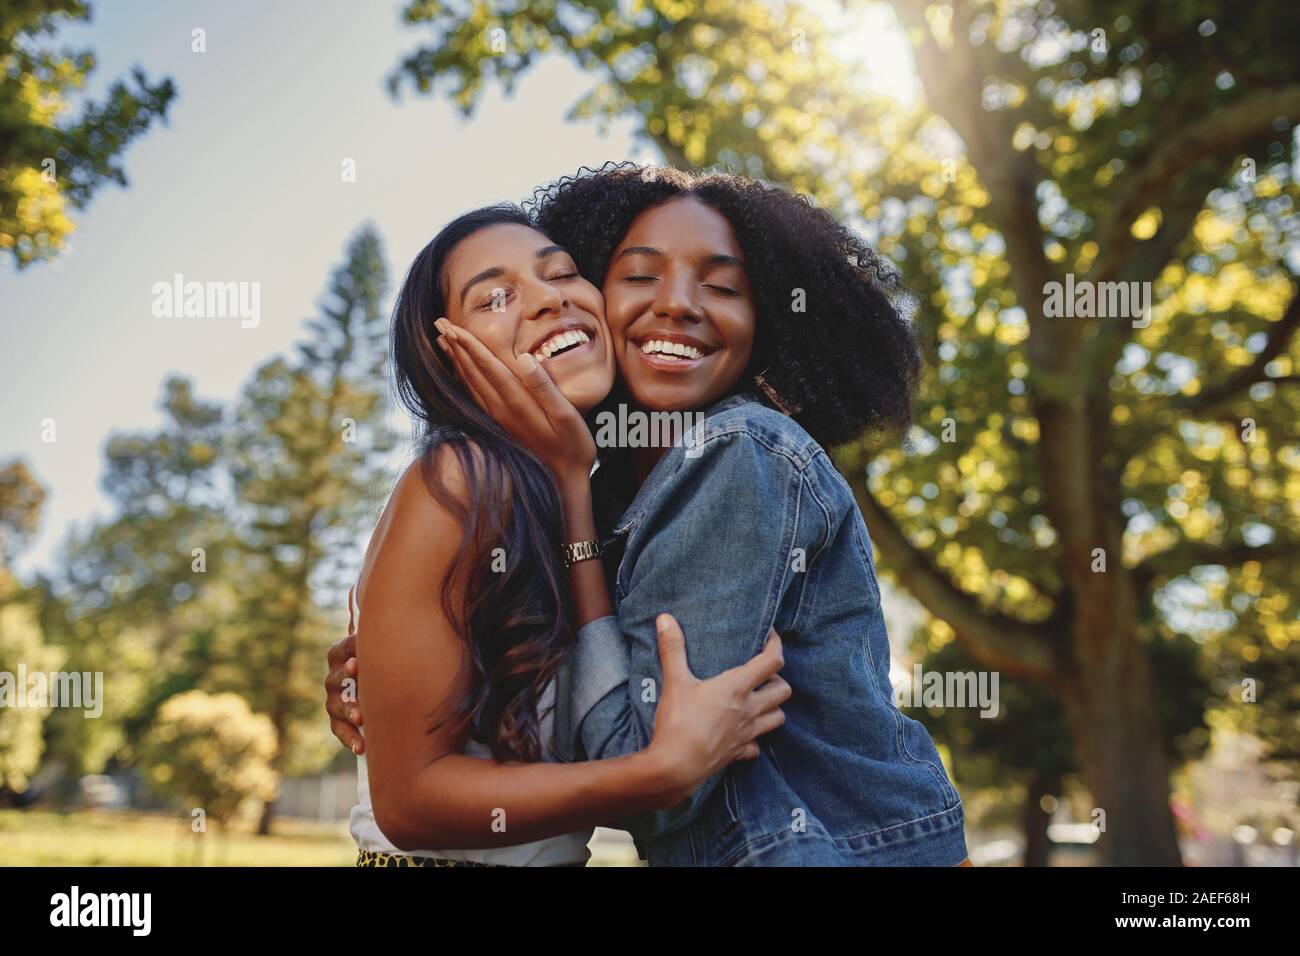 Sonriente, feliz retrato de una joven de diferentes amigas blanco y negro abrazando a cada uno de otros y divertirse al aire libre en el parque Foto de stock